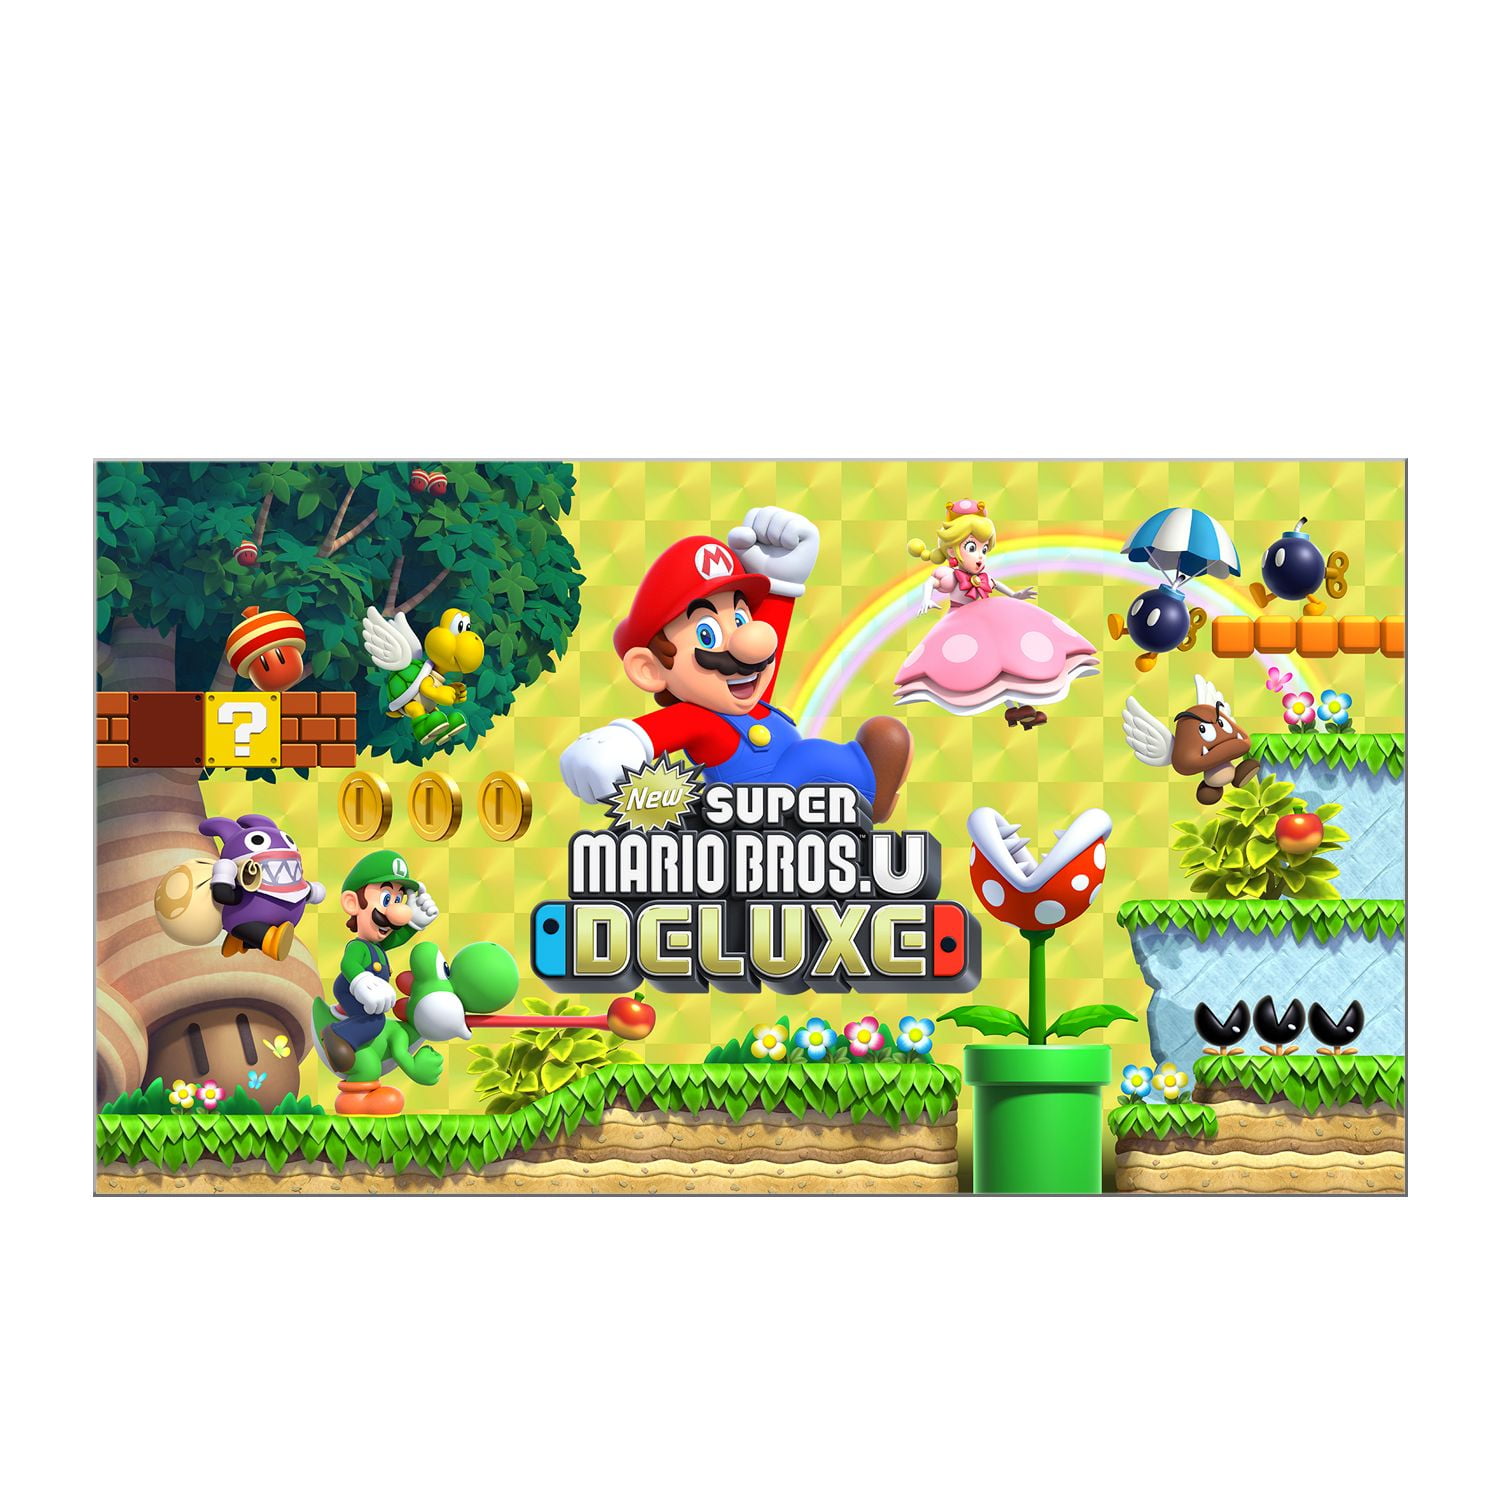 beddua erken deneme yap  New Super Mario Bros U Deluxe, Nintendo Switch [Digital Download] -  Walmart.com